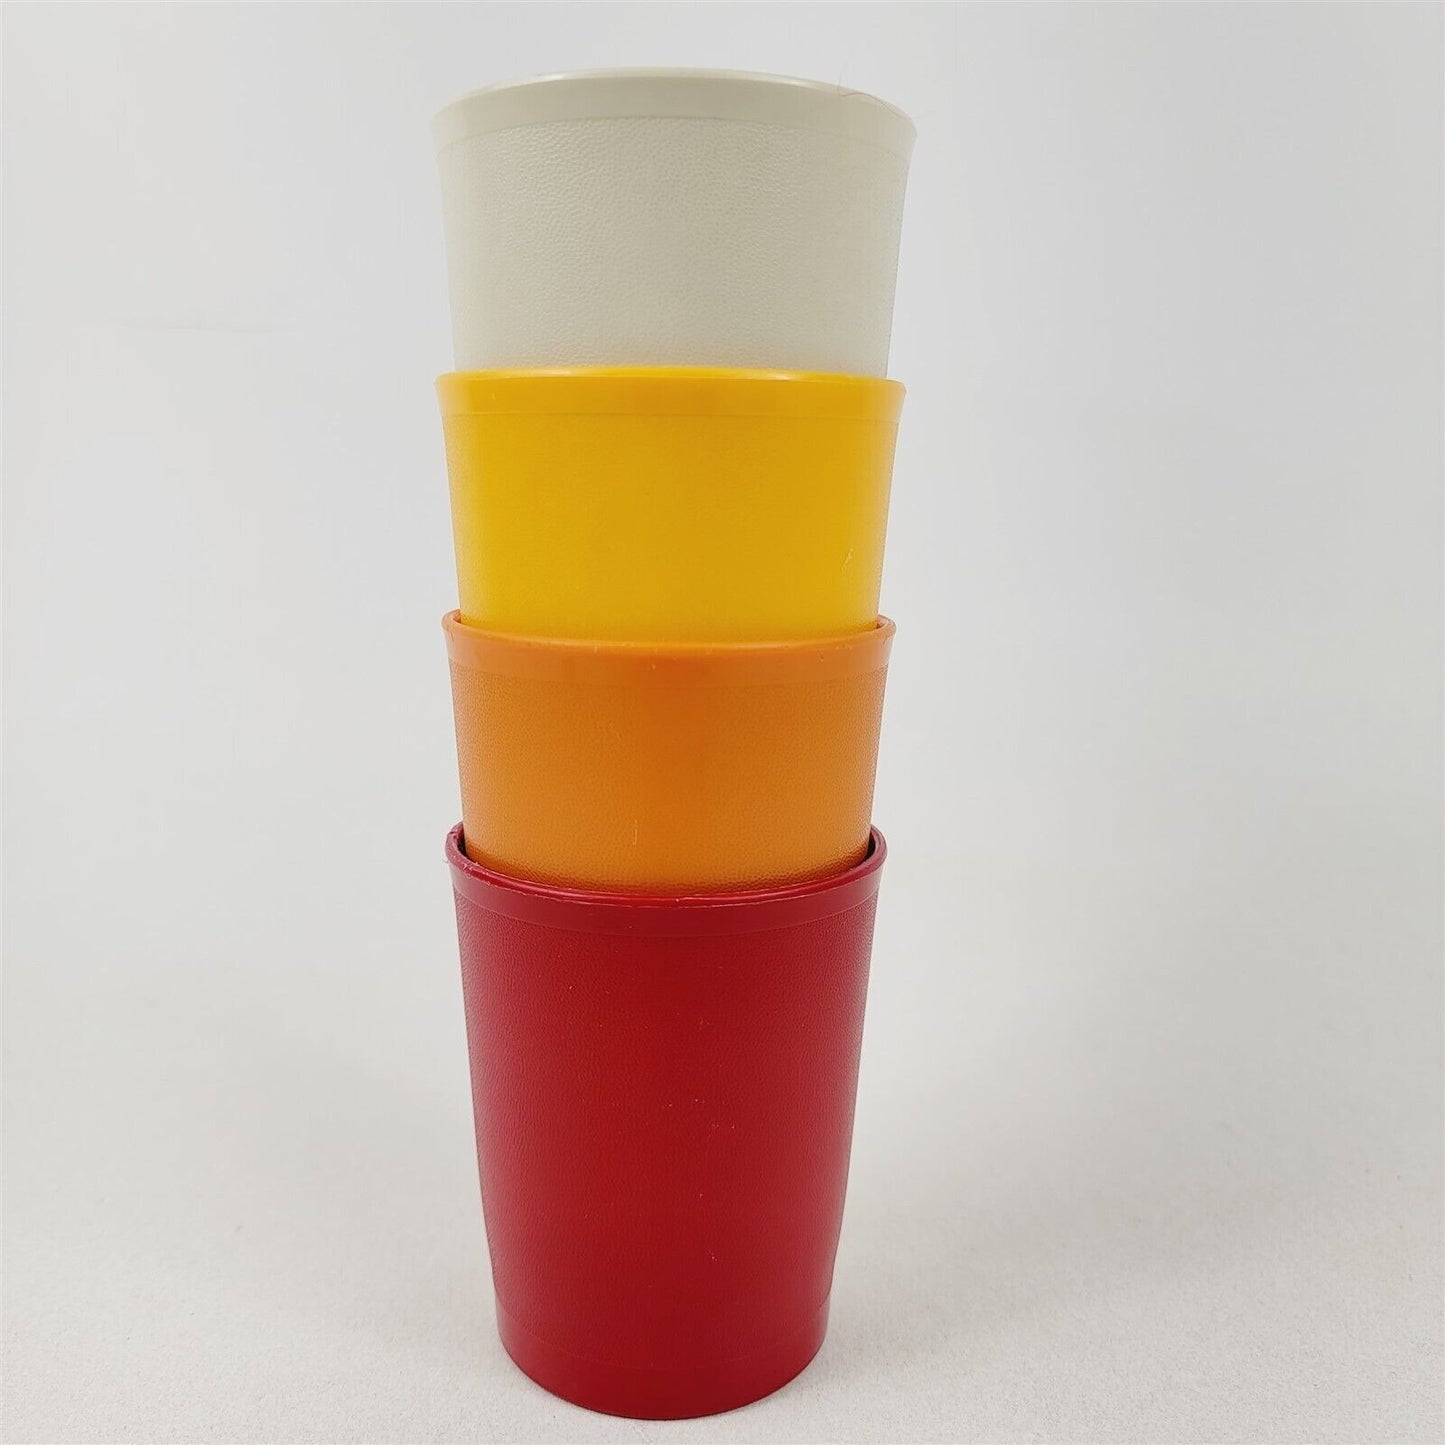 4 Vintage Tupperware Kids Juice Cups Tumblers 1251 Red Orange Gold Beige 6 oz